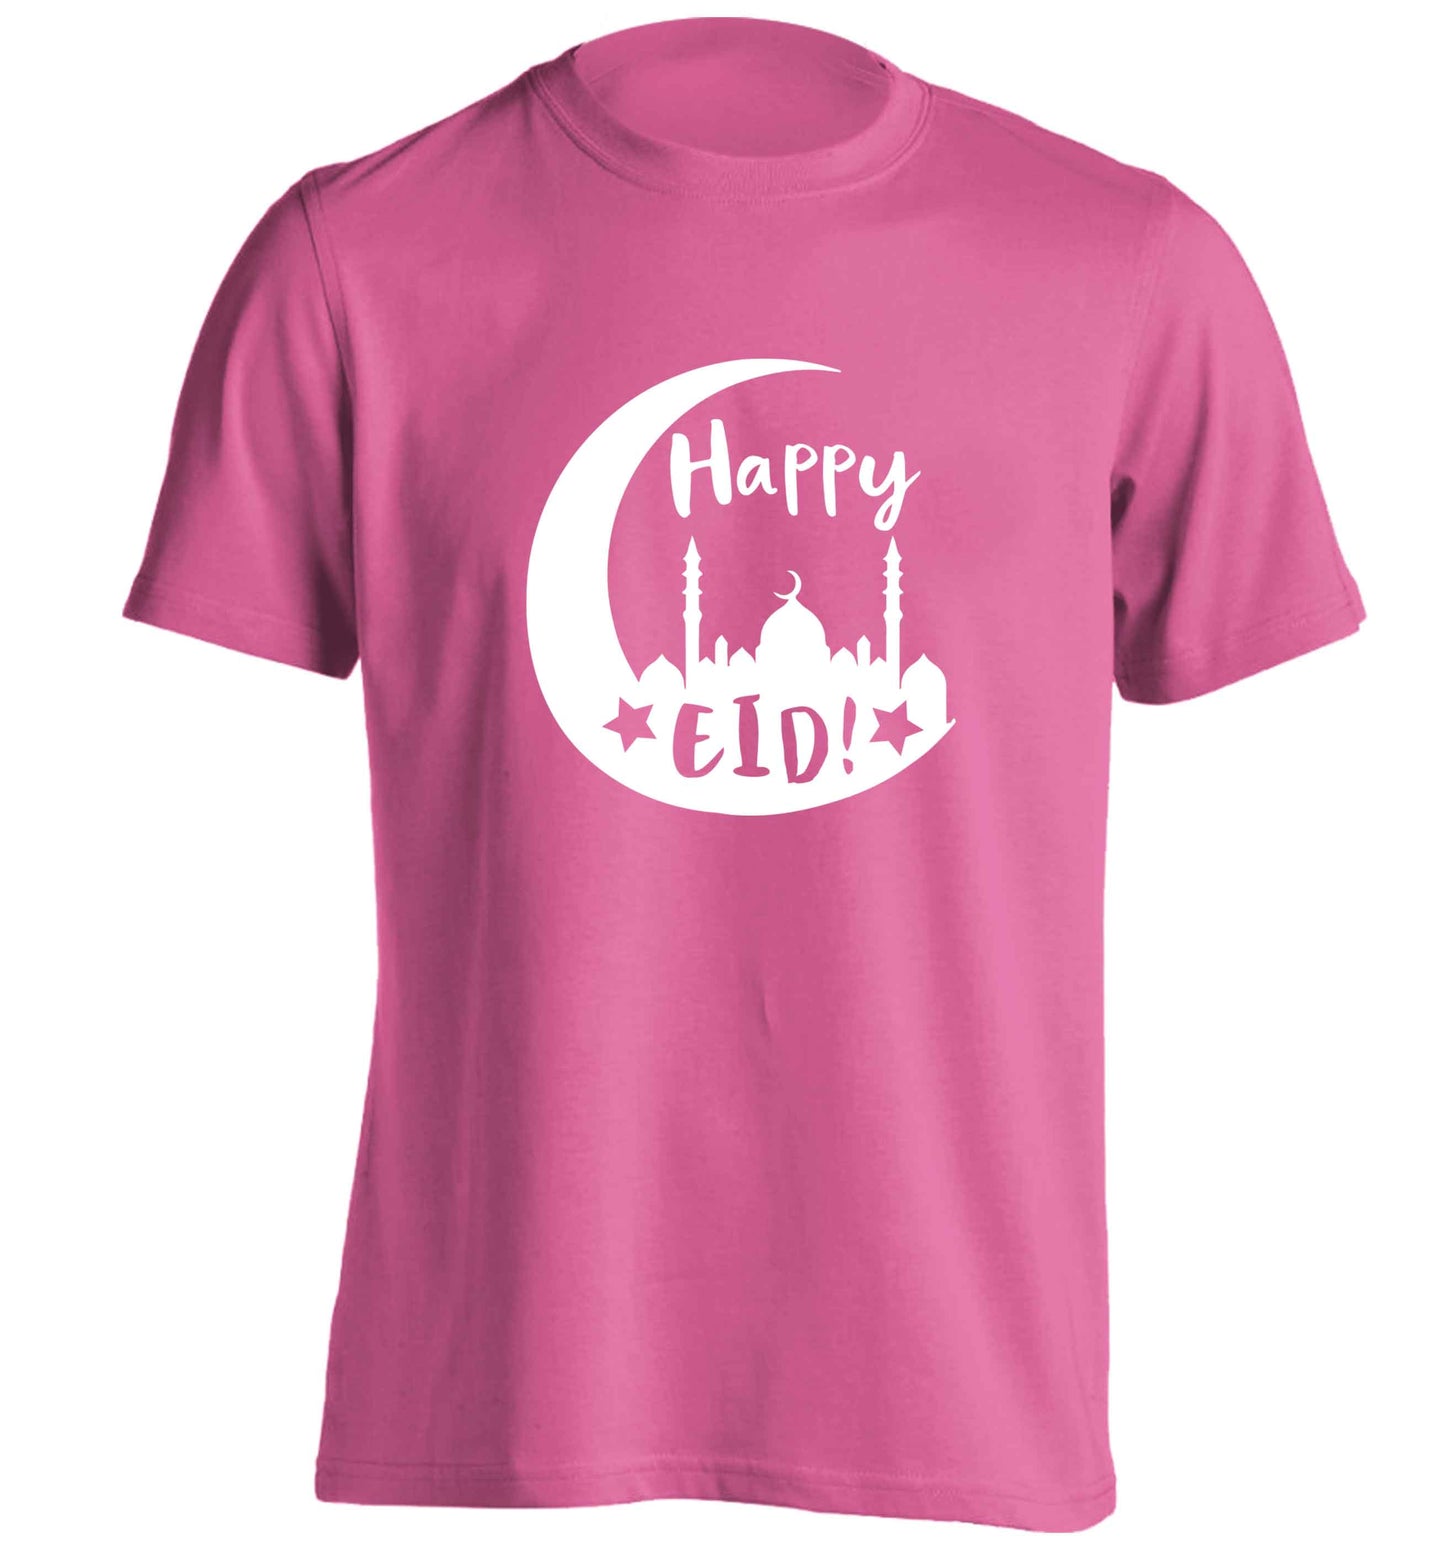 Happy Eid adults unisex pink Tshirt 2XL